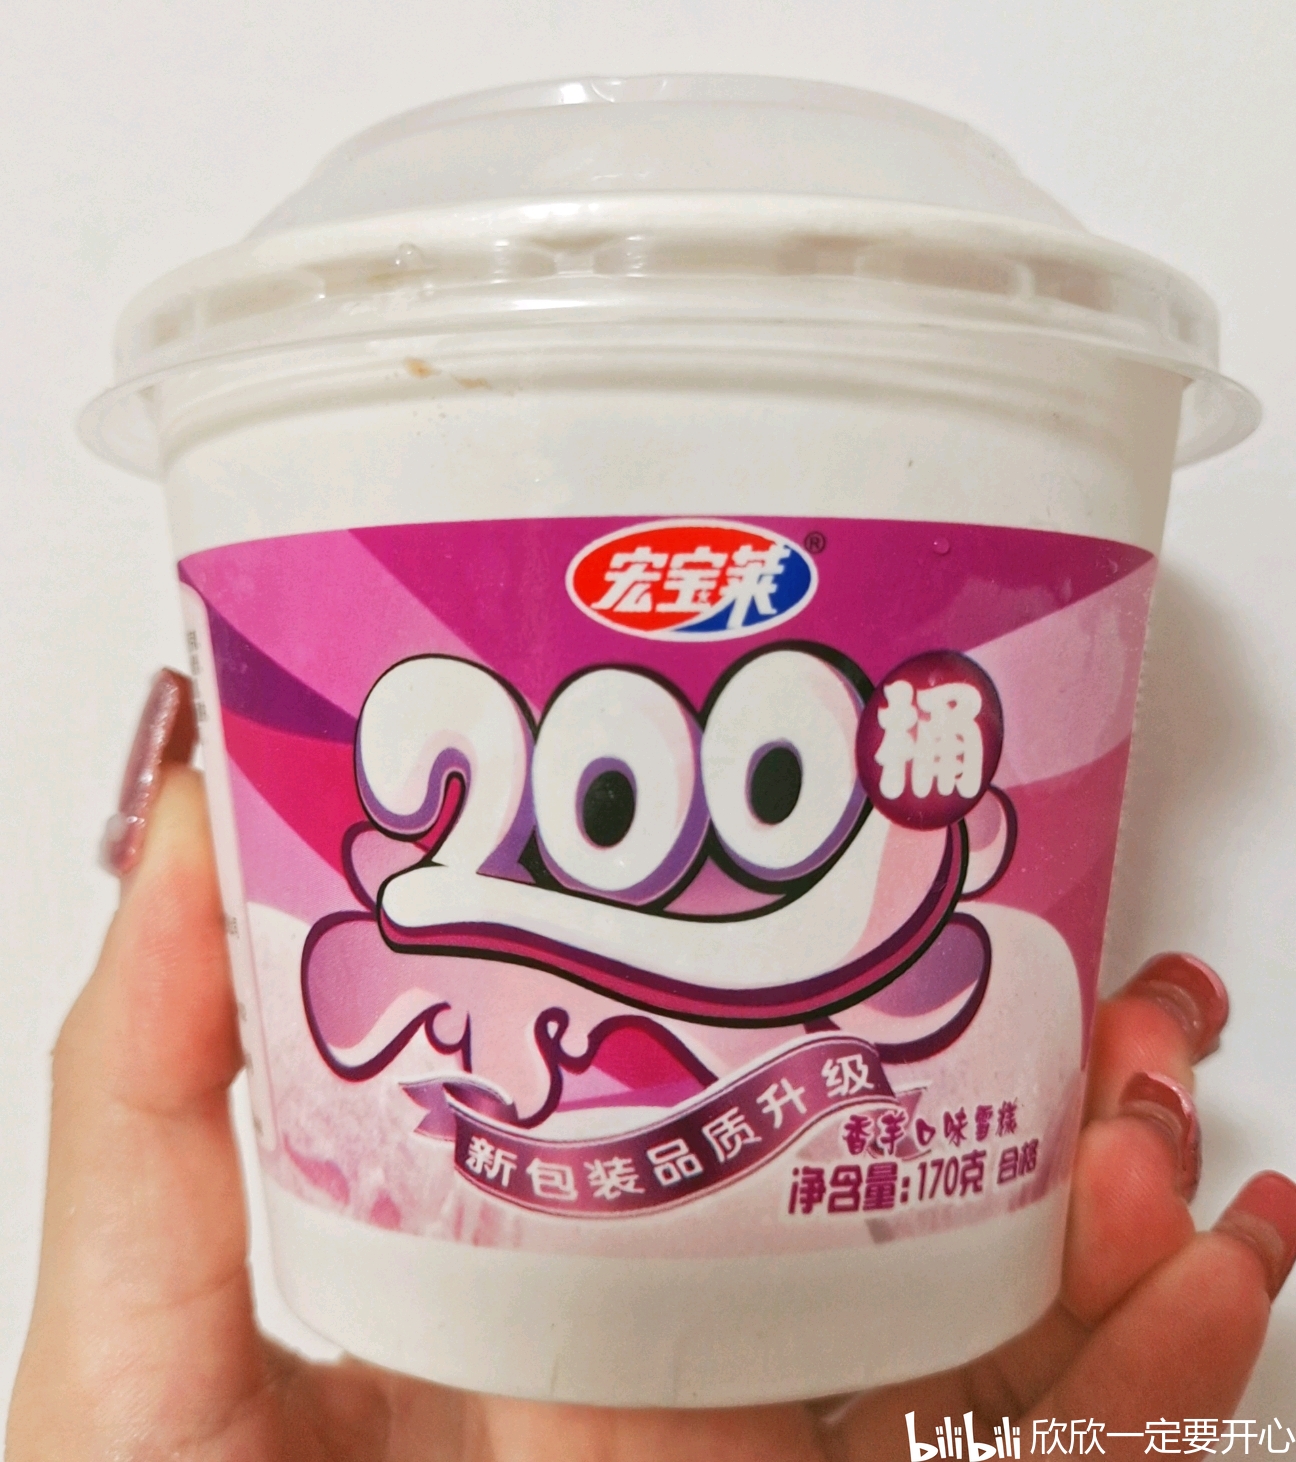 香芋冰淇淋童年回忆-图库-五毛网